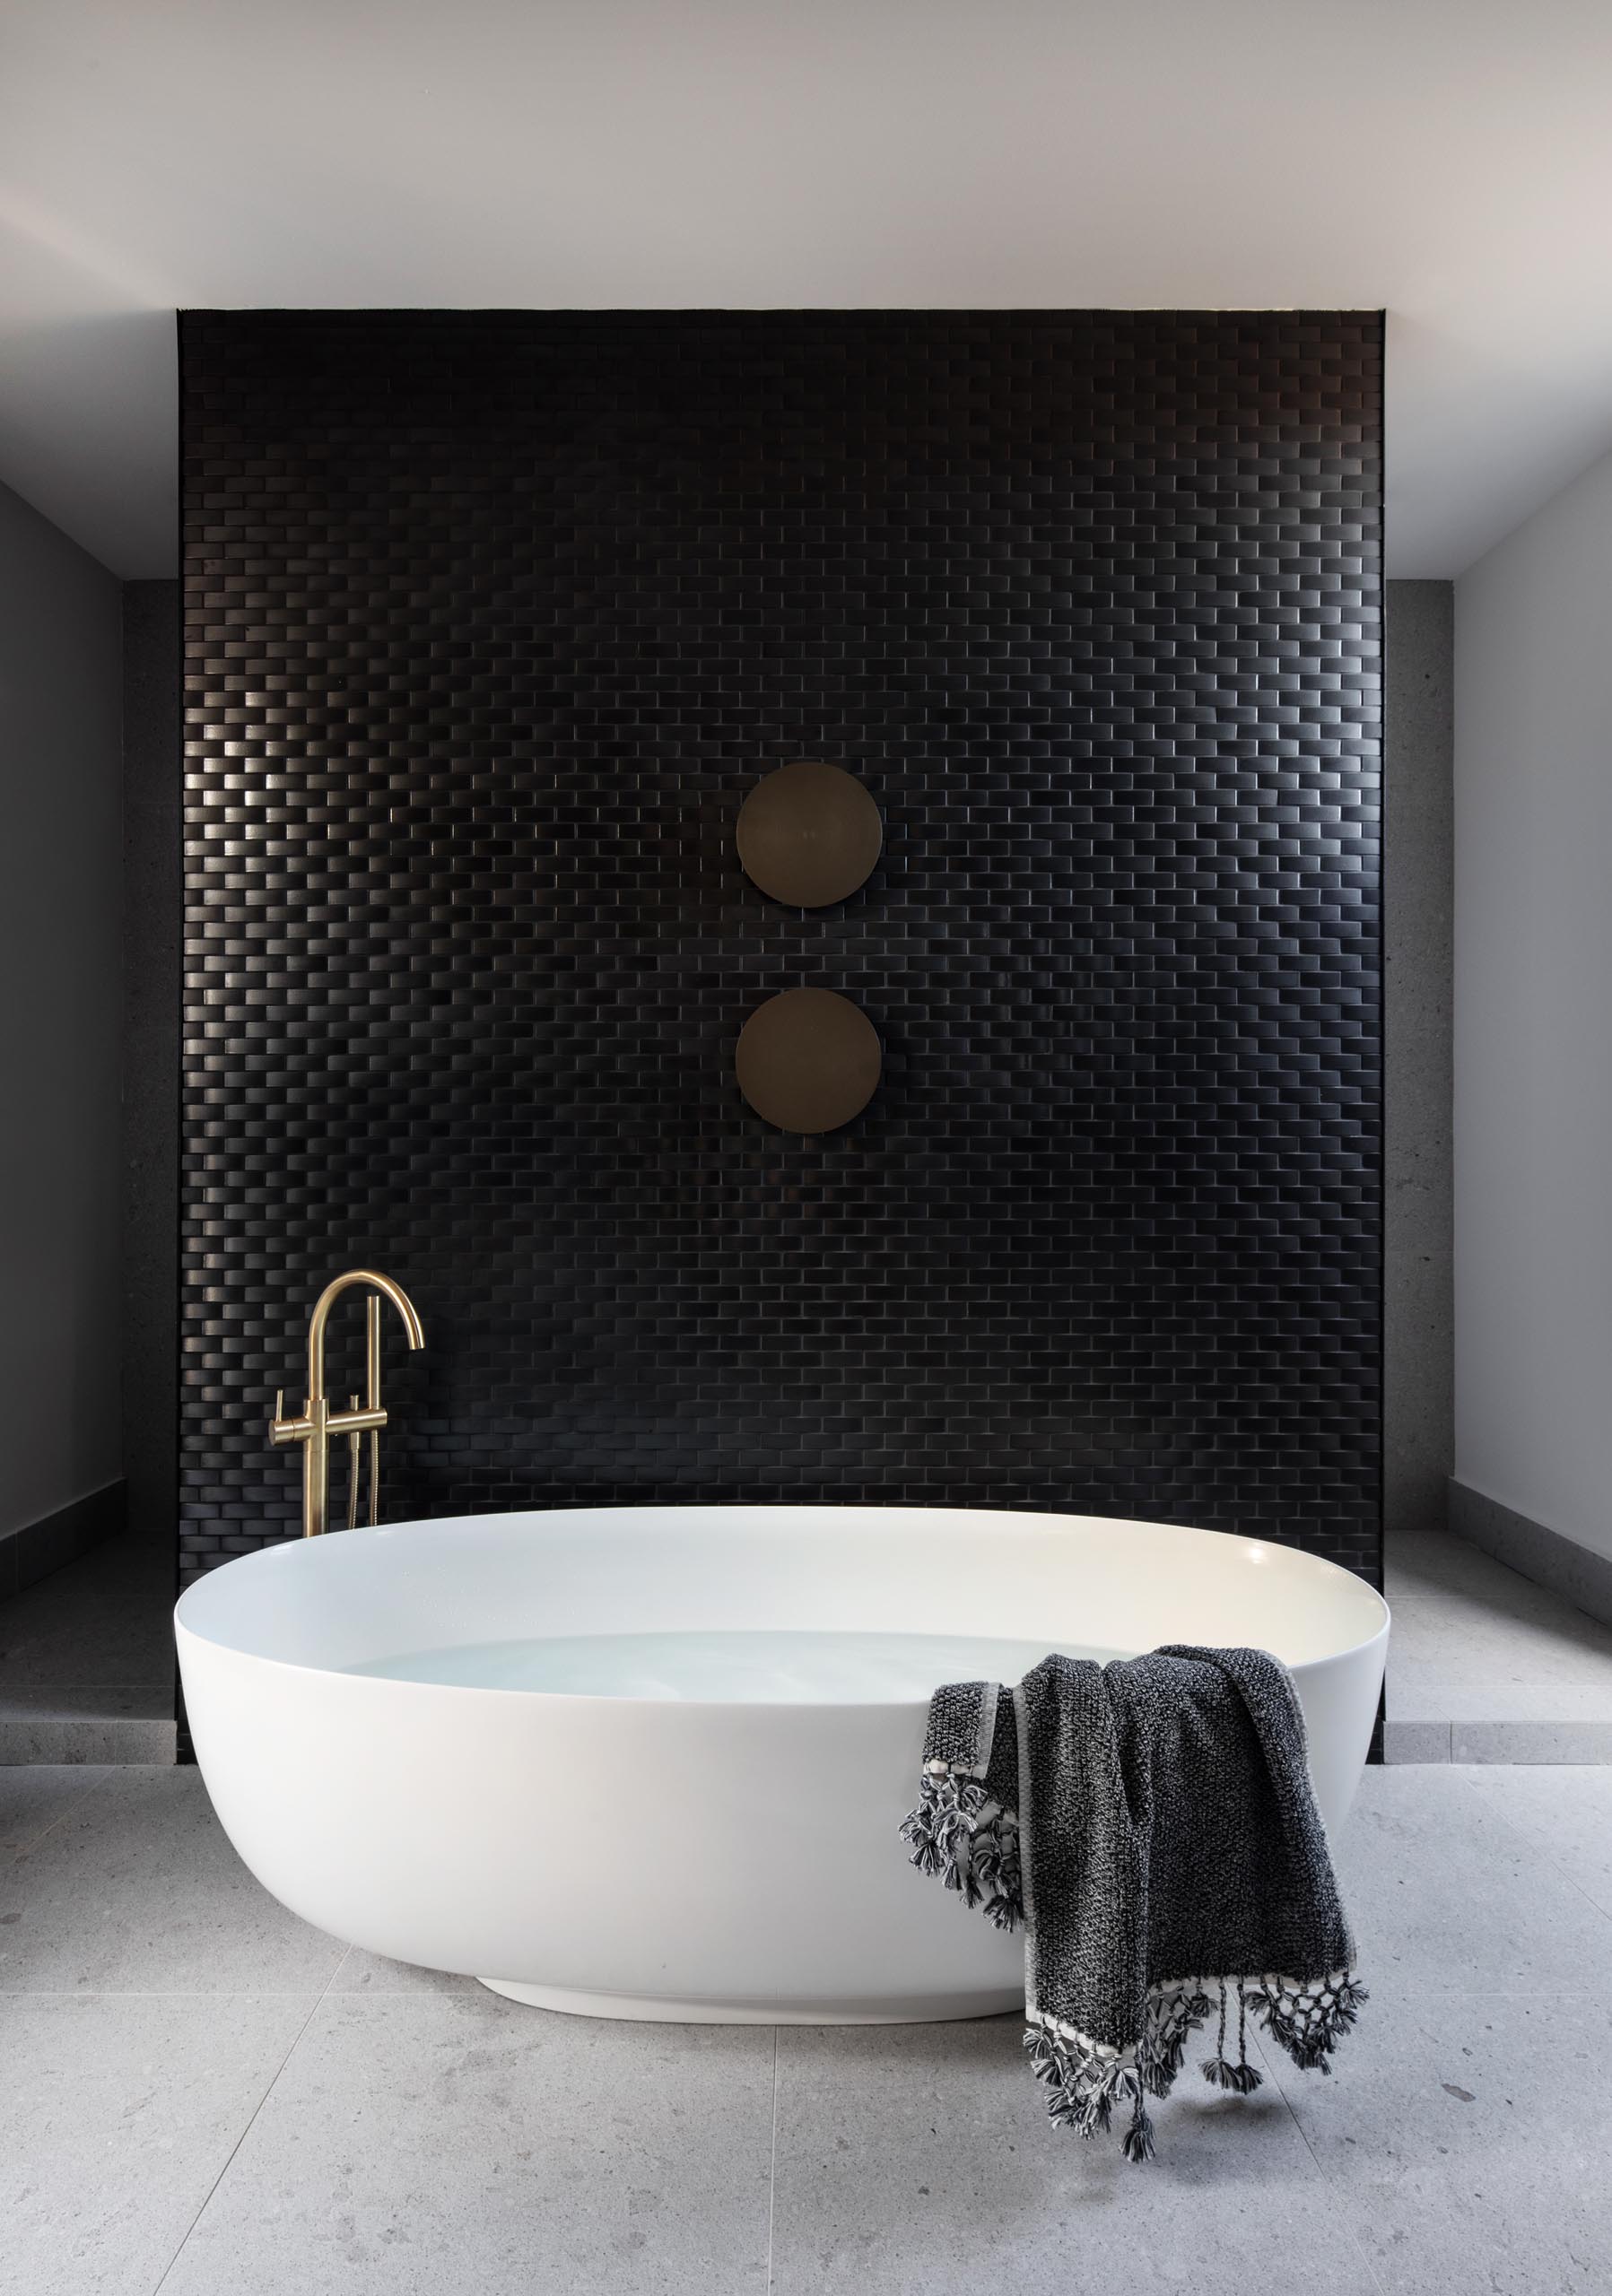 Современная ванная комната с акцентом на стене из черной плитки, которая служит фоном для большой овальной отдельно стоящей ванны.